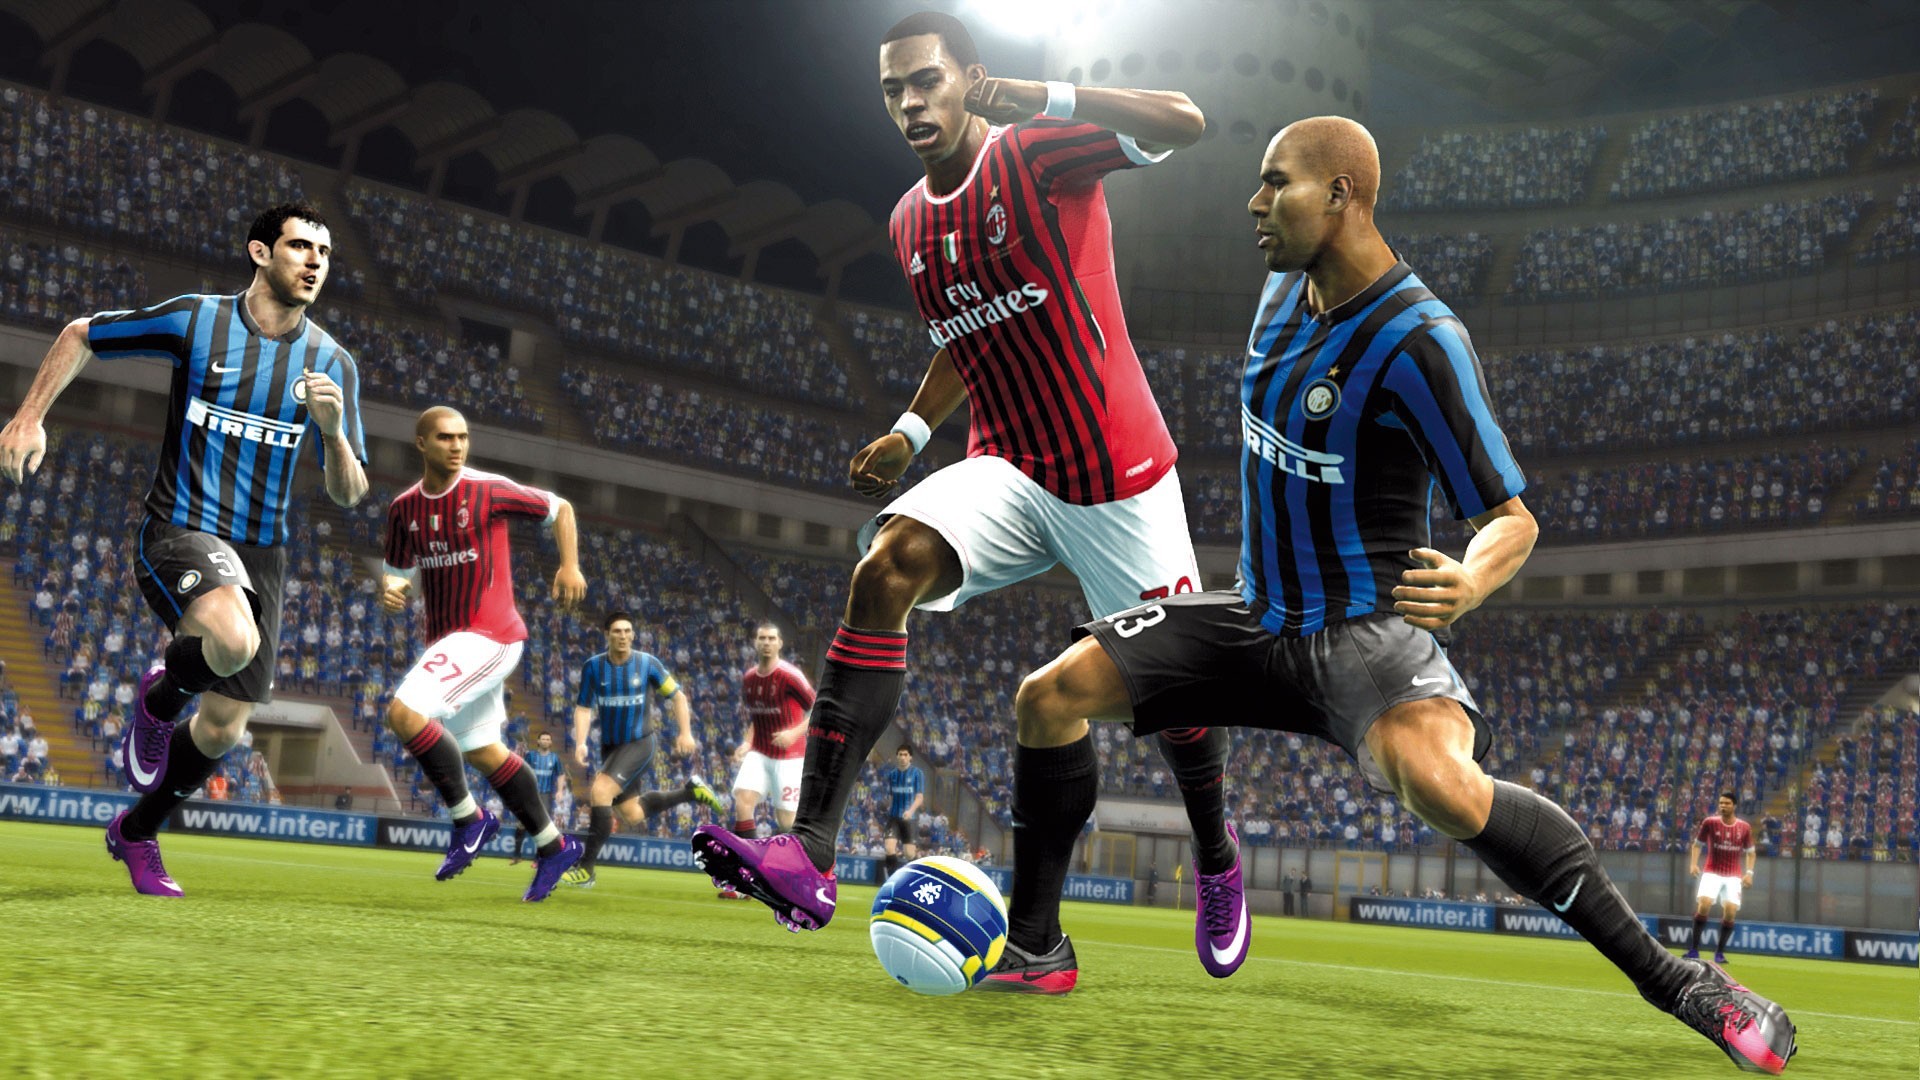 FIFA, Inter Milan, AC Milan Wallpaper